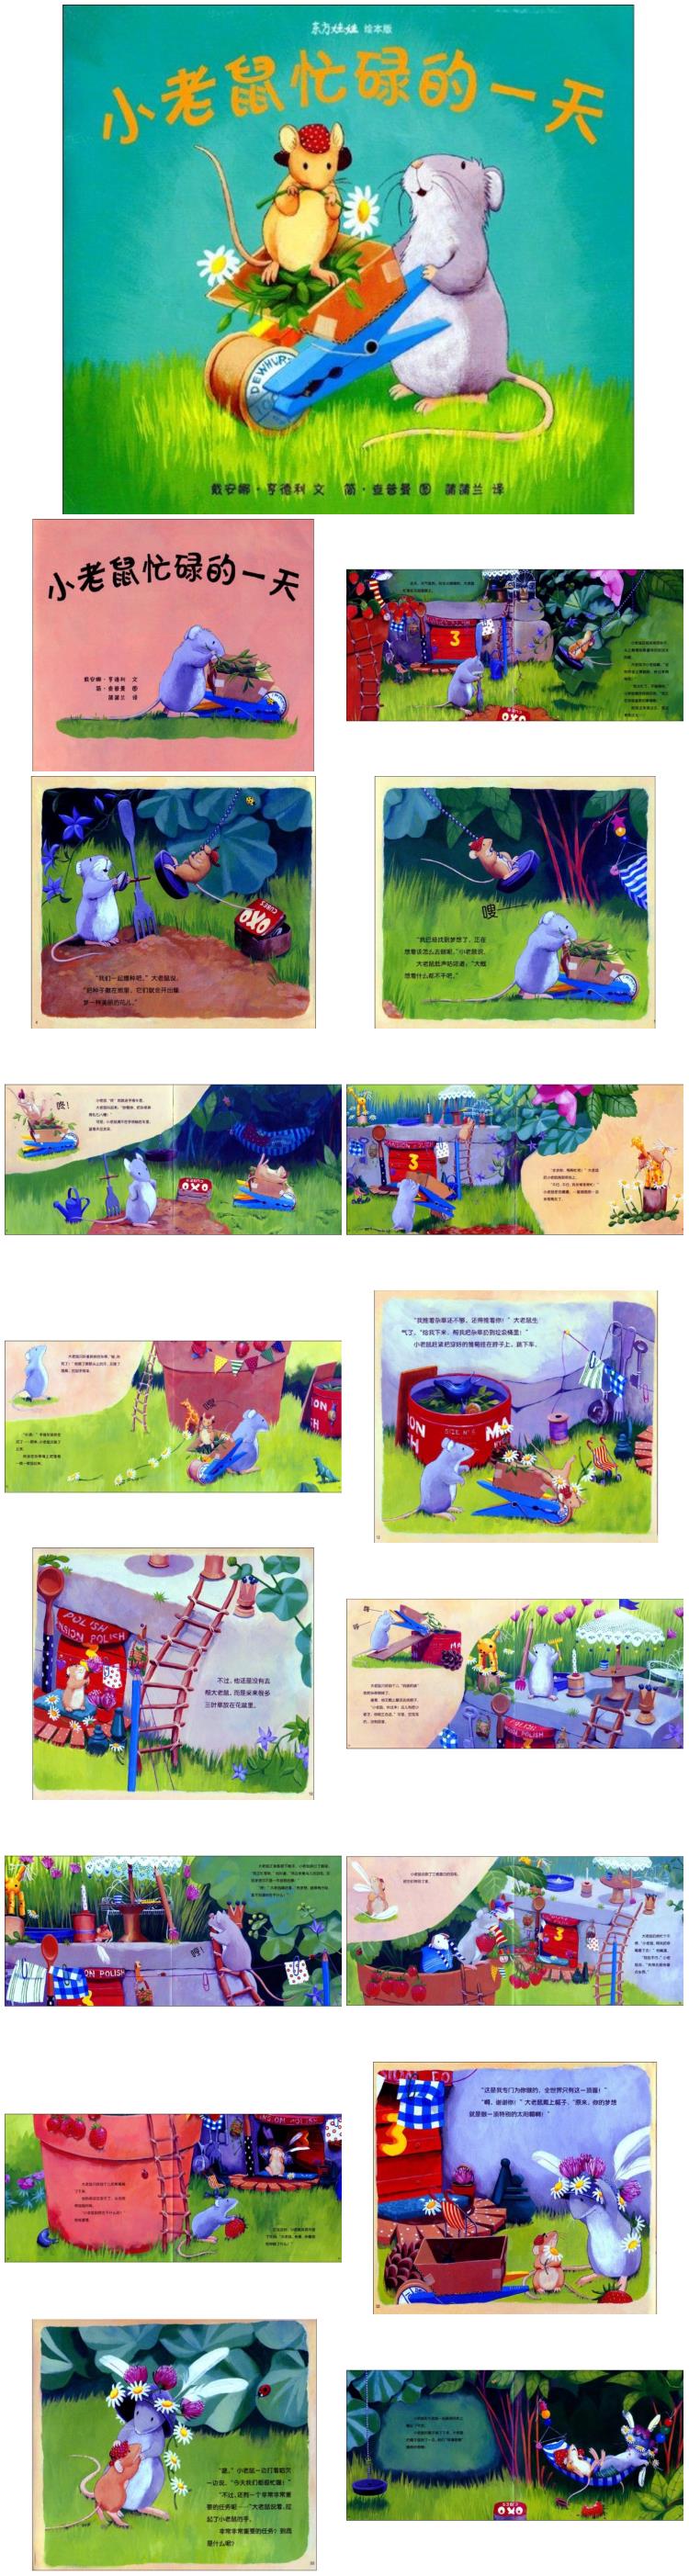 《小老鼠忙碌的一天》童话绘本儿童故事PPT